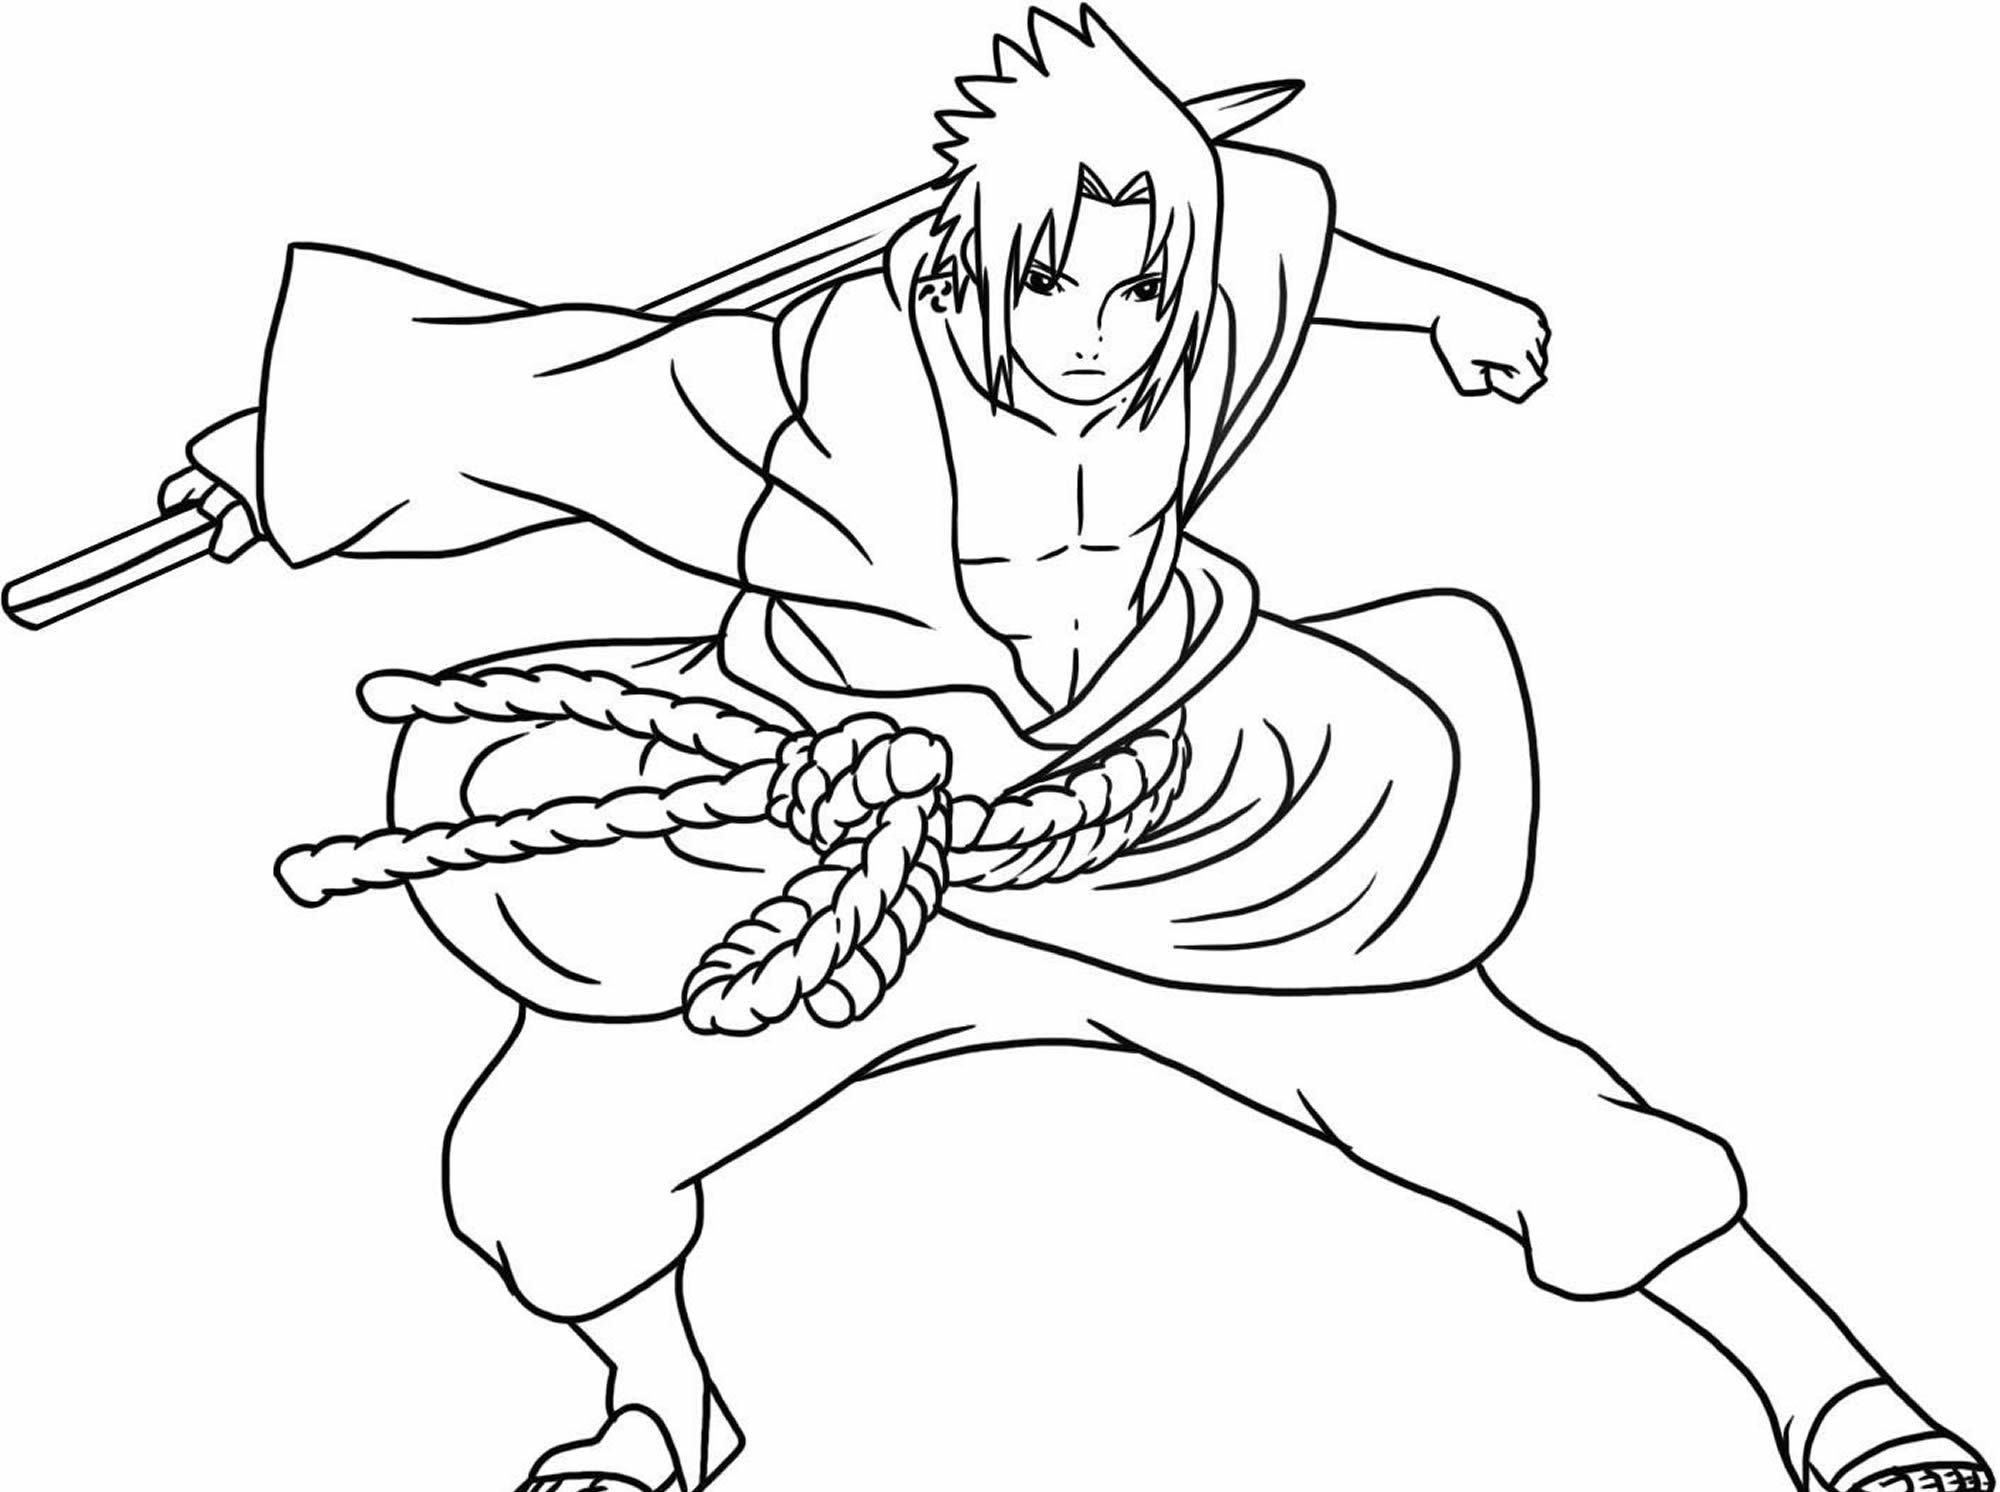 Desenhando um pouco naruto sasuke sakura e kakashi espero que gostem  #art#fanart#naruto